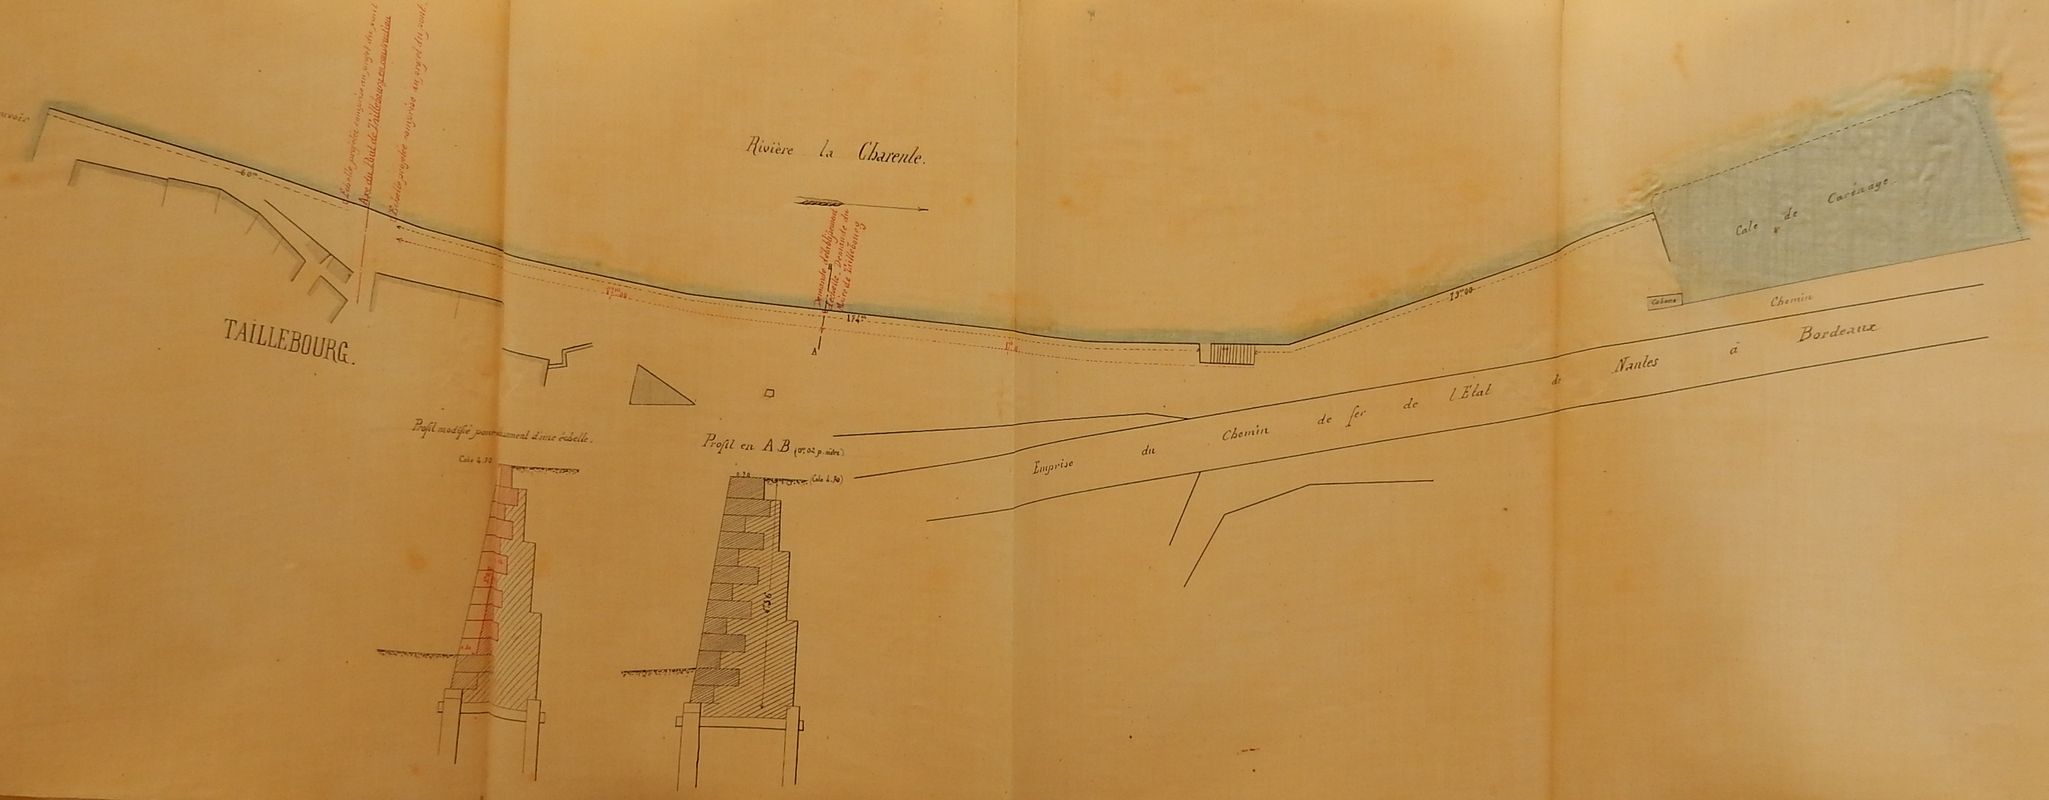 Plan et profils des quais en 1887. 